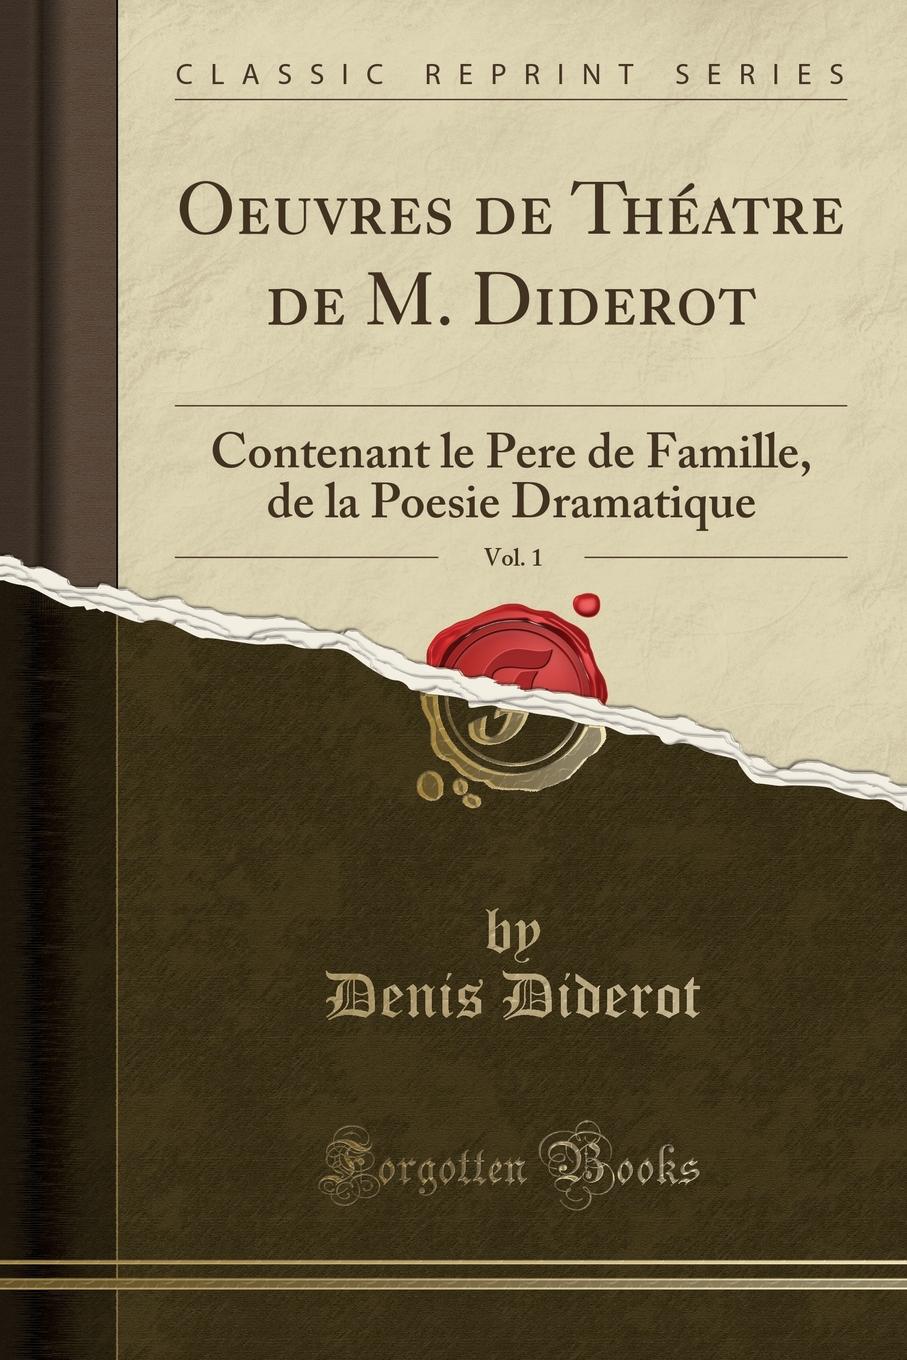 Oeuvres de Theatre de M. Diderot, Vol. 1. Contenant le Pere de Famille, de la Poesie Dramatique (Classic Reprint)